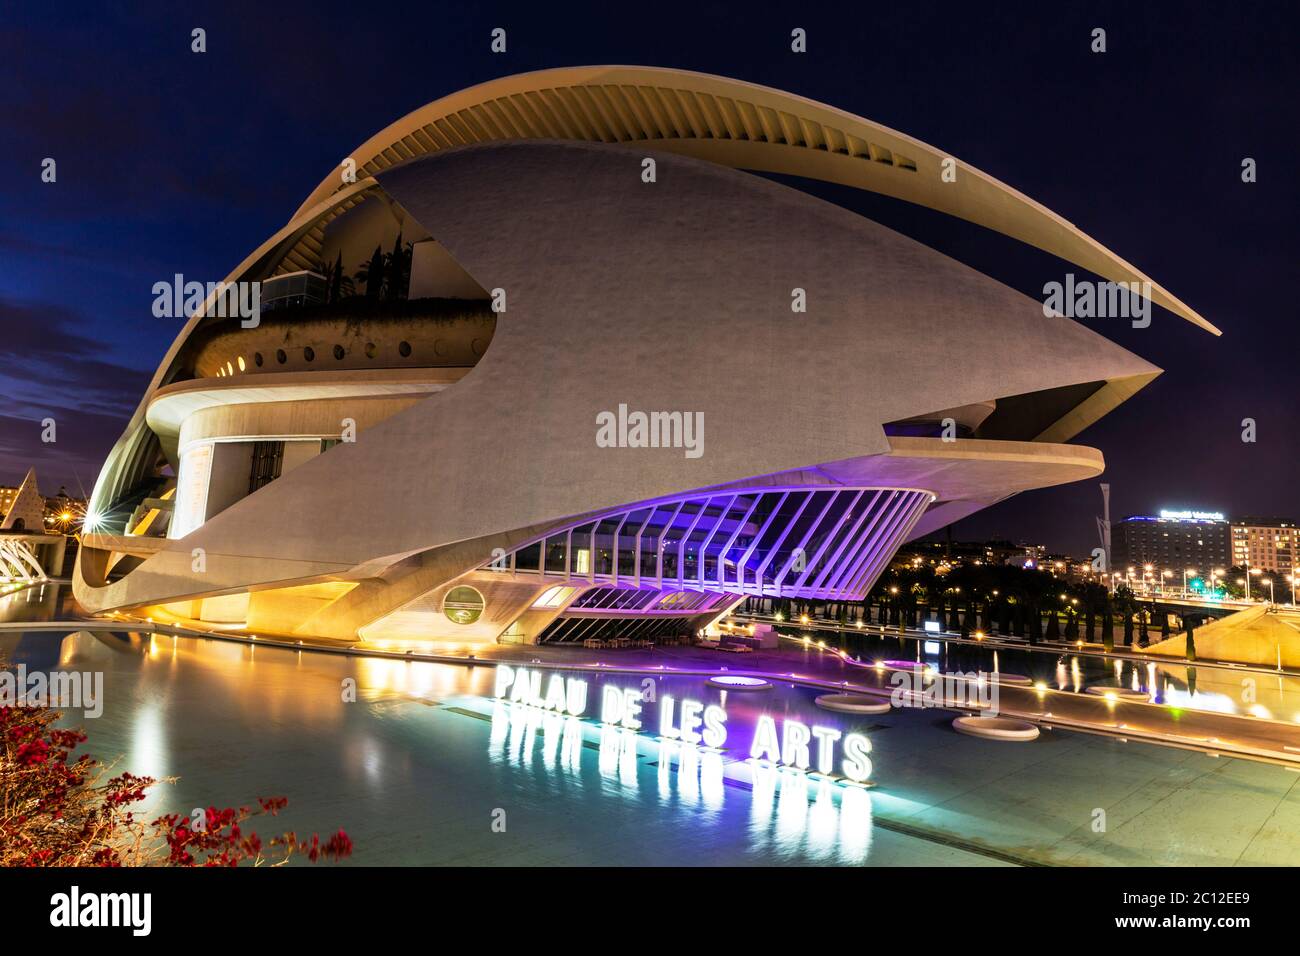 Futurista el Palau de les Arts Reina Sofía, teatro de la ópera y centro cultural, Valencia, España. Foto de stock